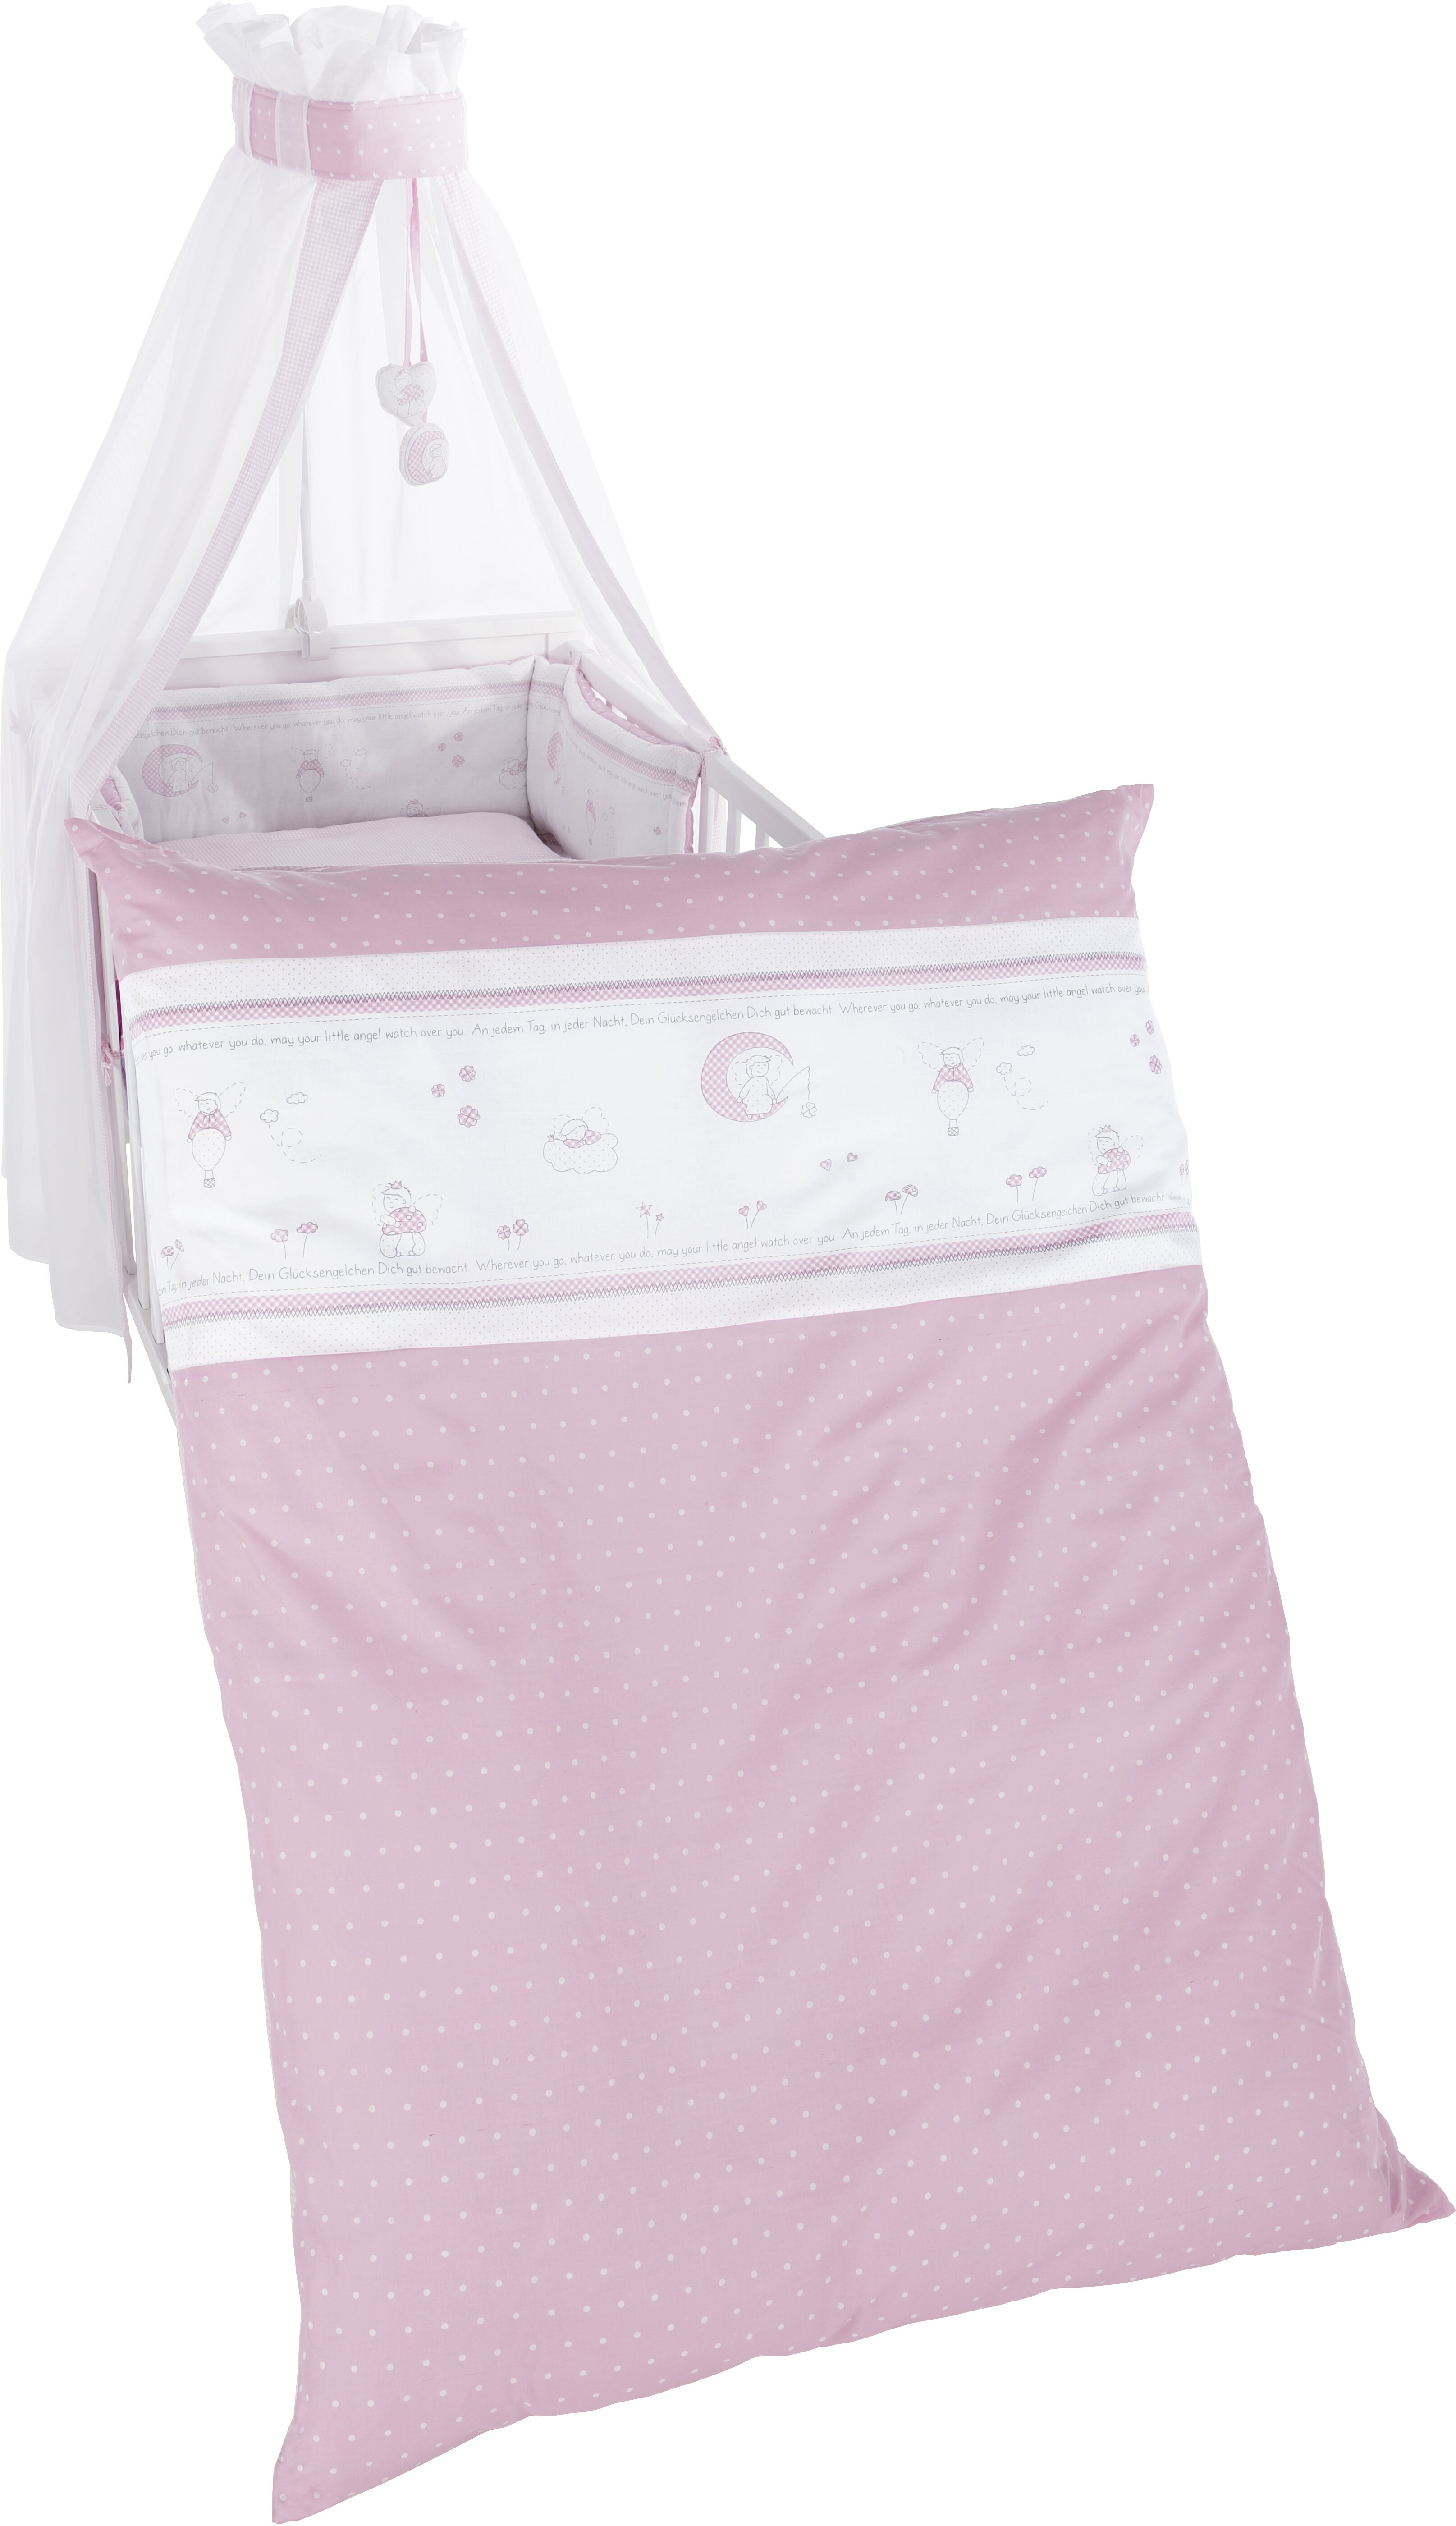 blush pink cot bedding